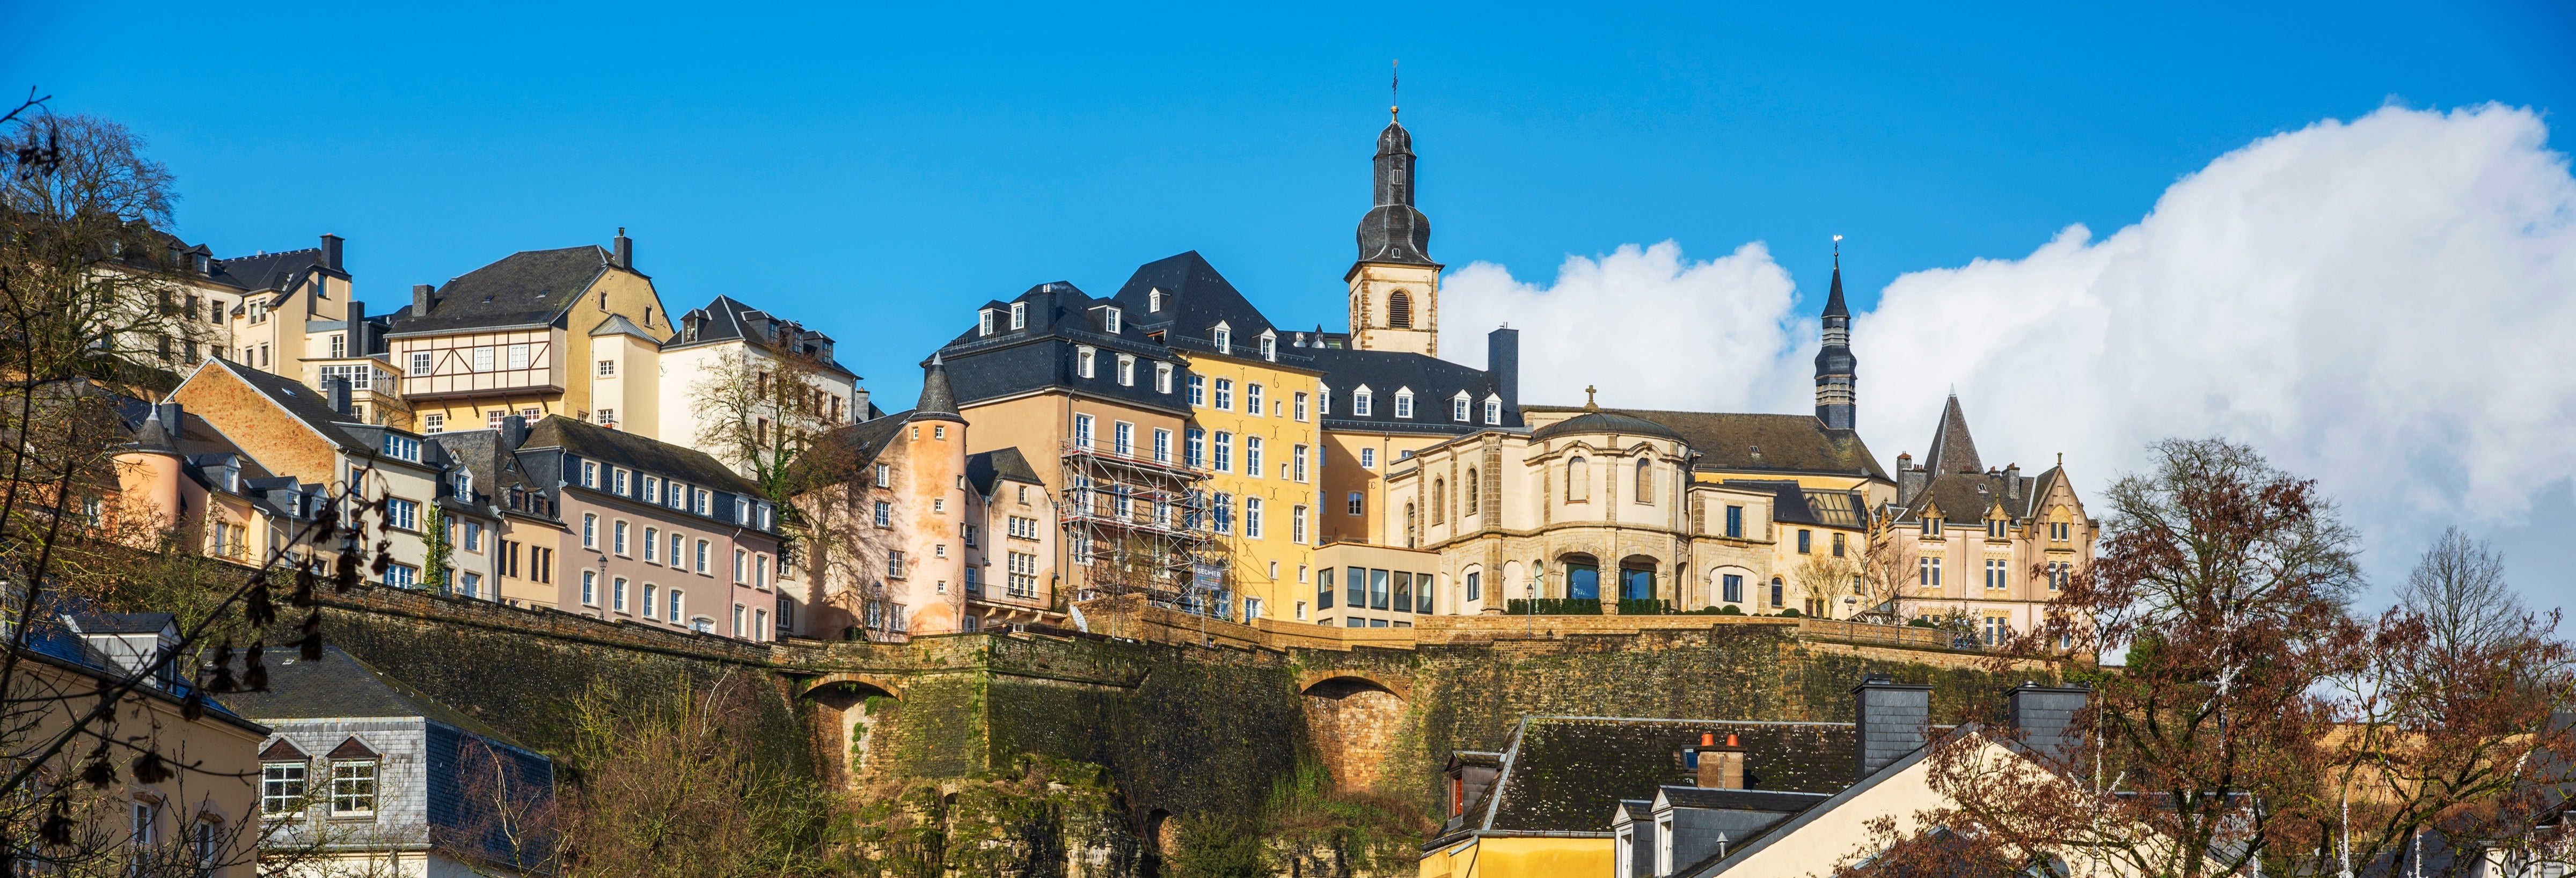 Excursión a Luxemburgo y la abadía de Rochefort